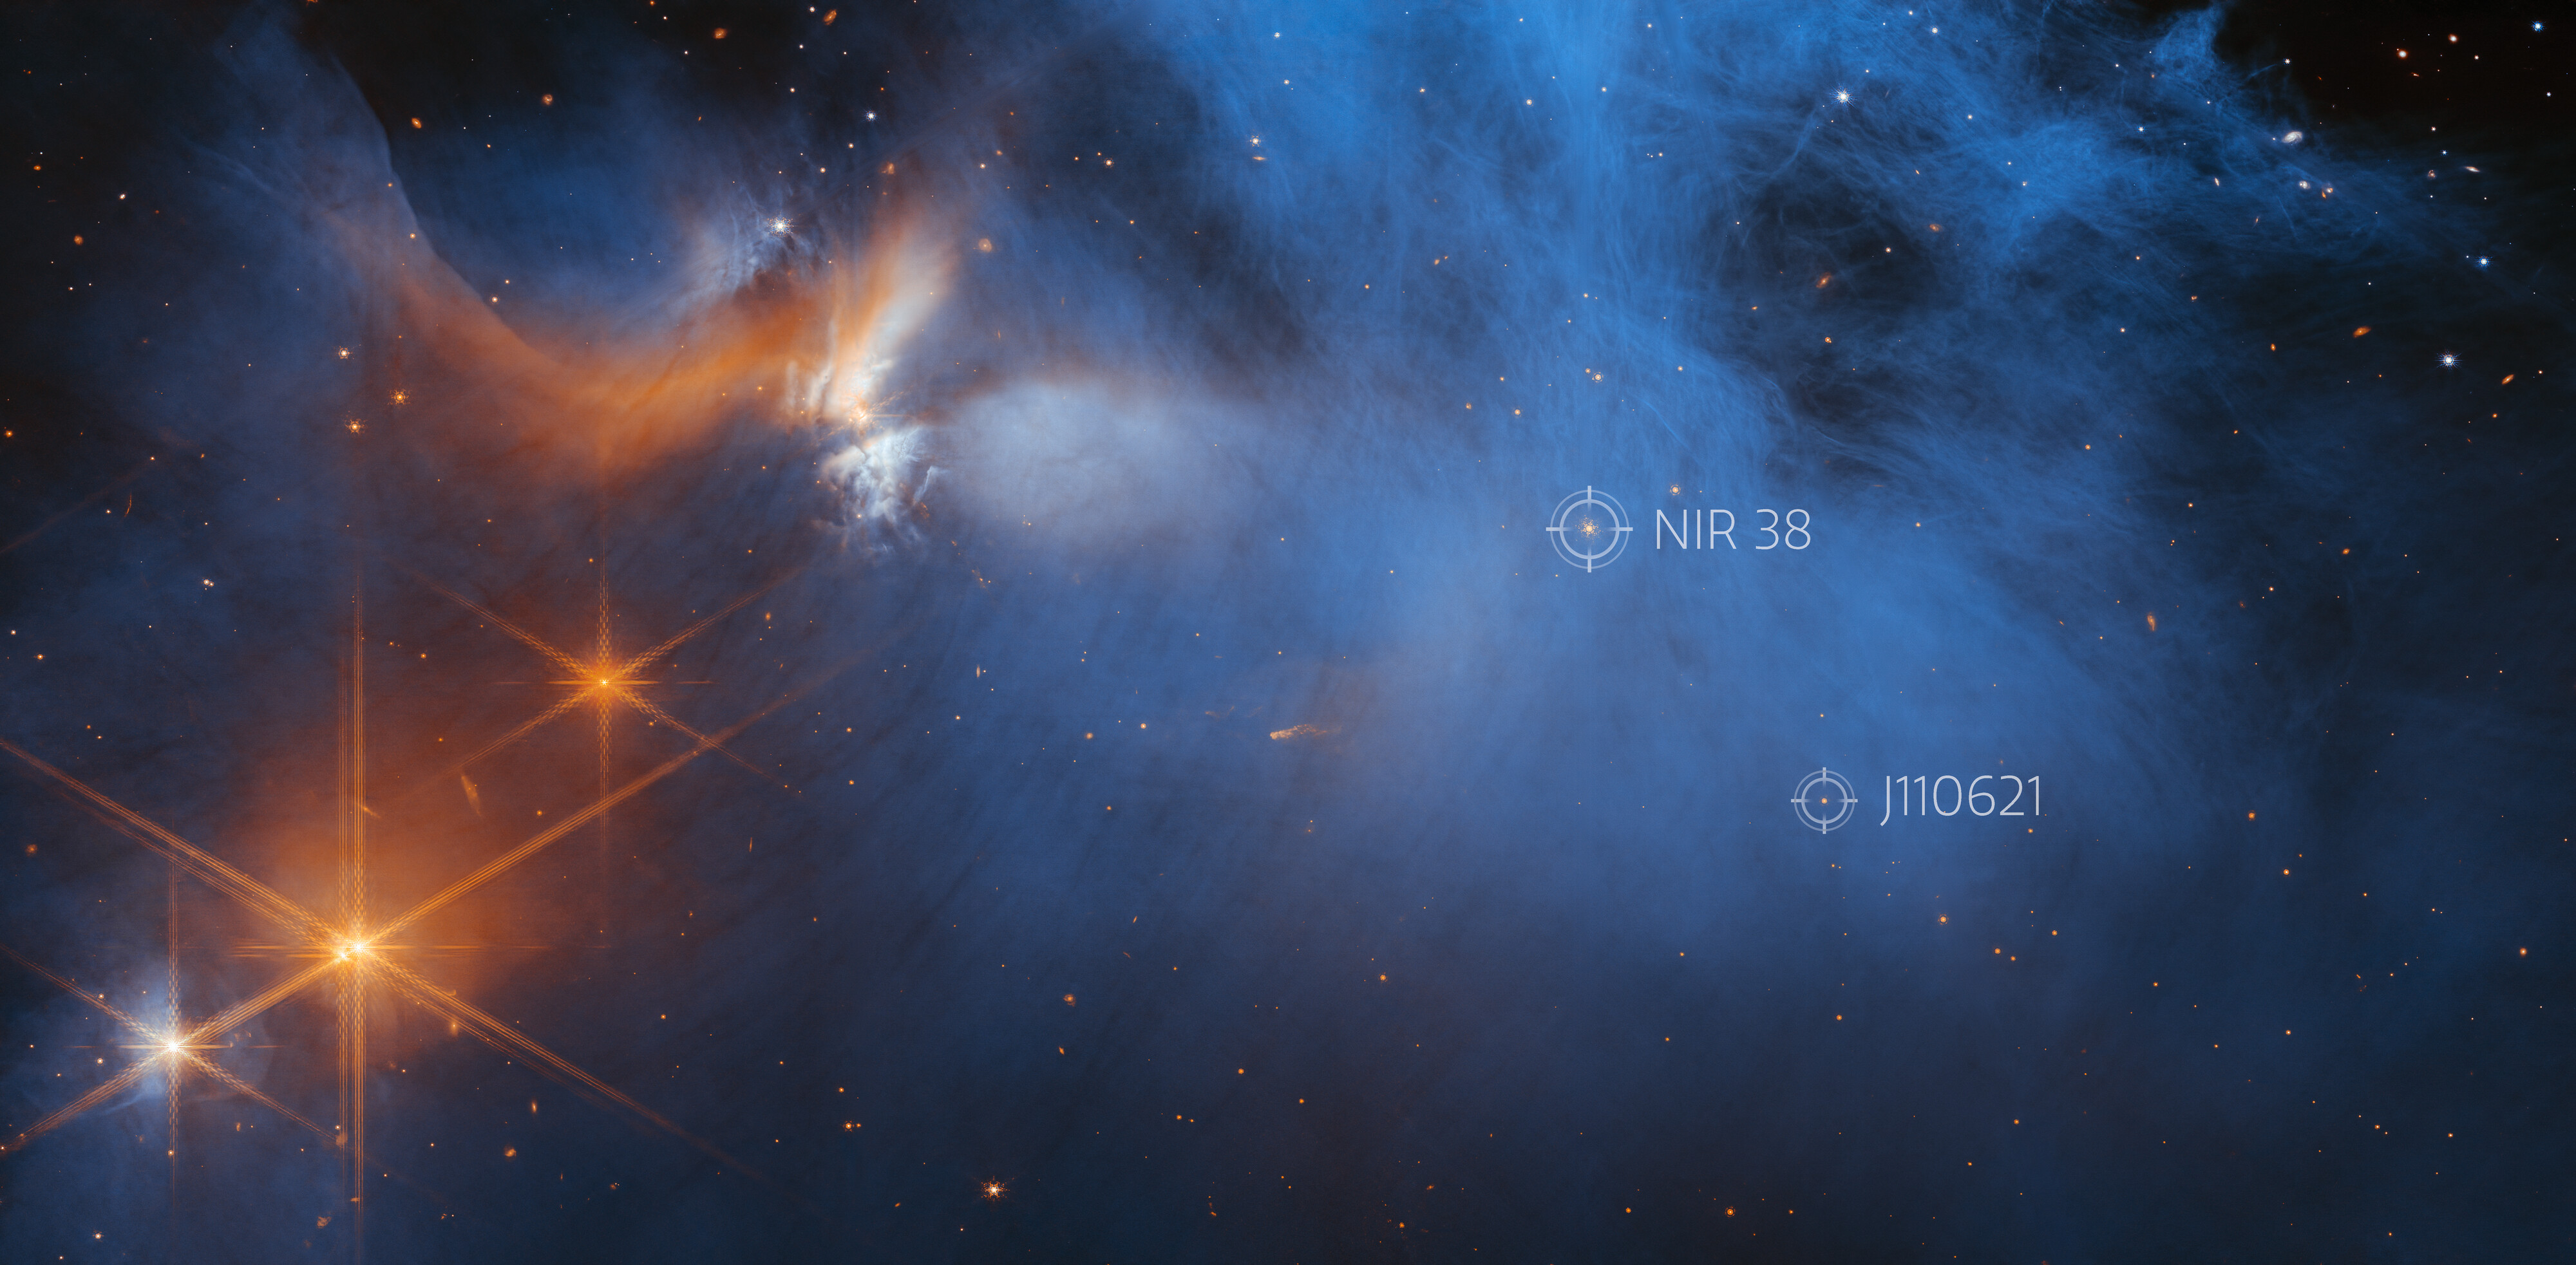 Teleskop Webba - zdjęcie obłoku Kameleon I (położenie gwiazd NIR 38 i J110621)